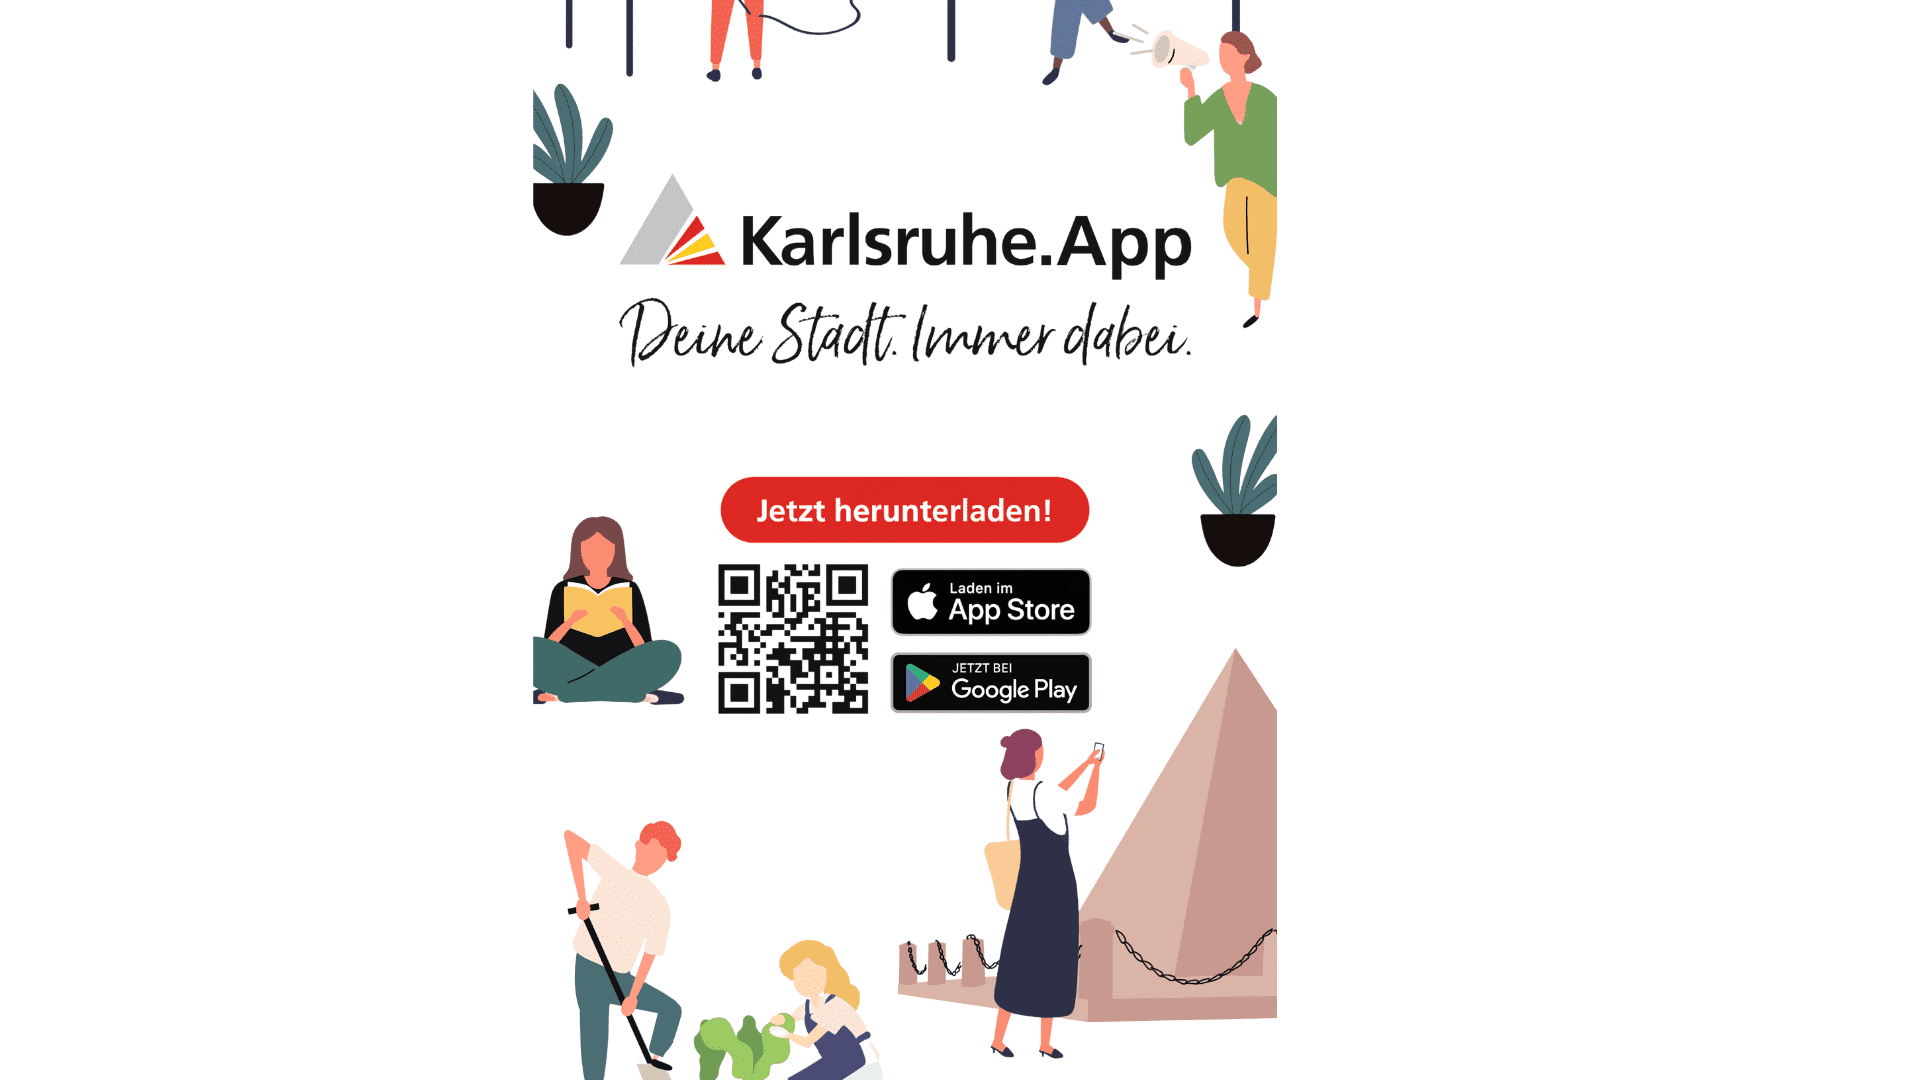 Karlsruhe.app